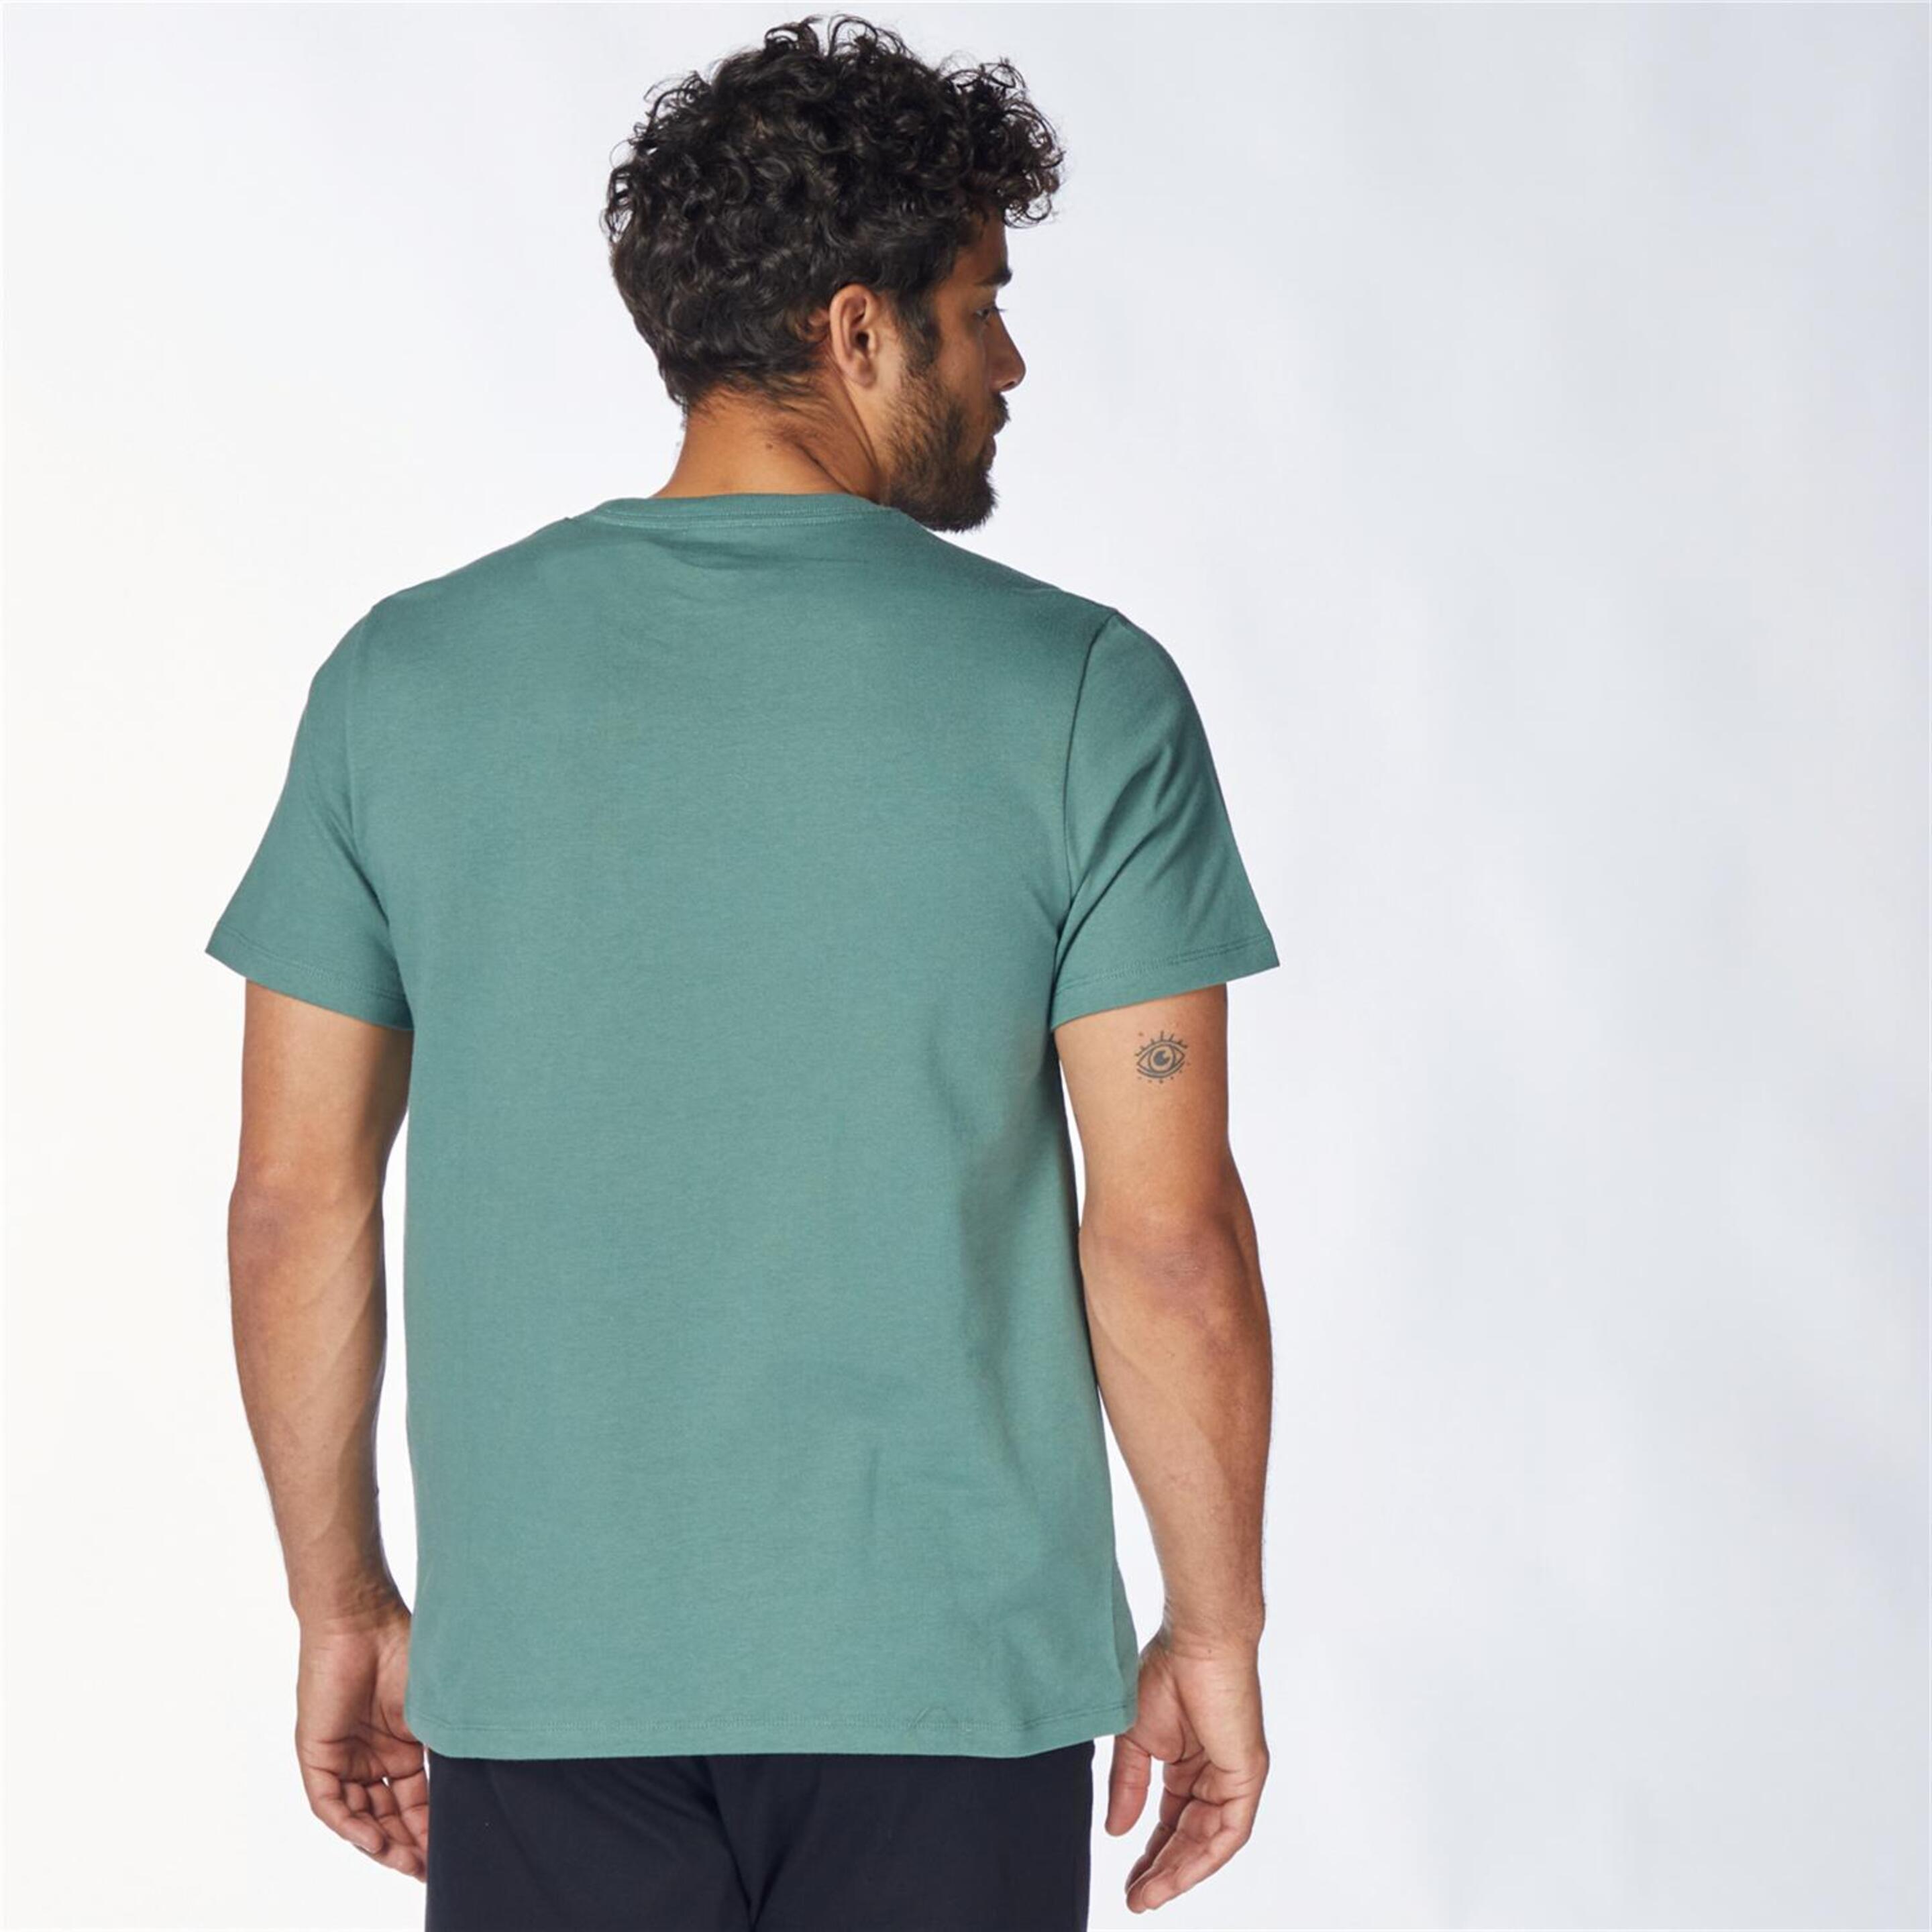 Levi's Ss Original - Verde - Camiseta Hombre